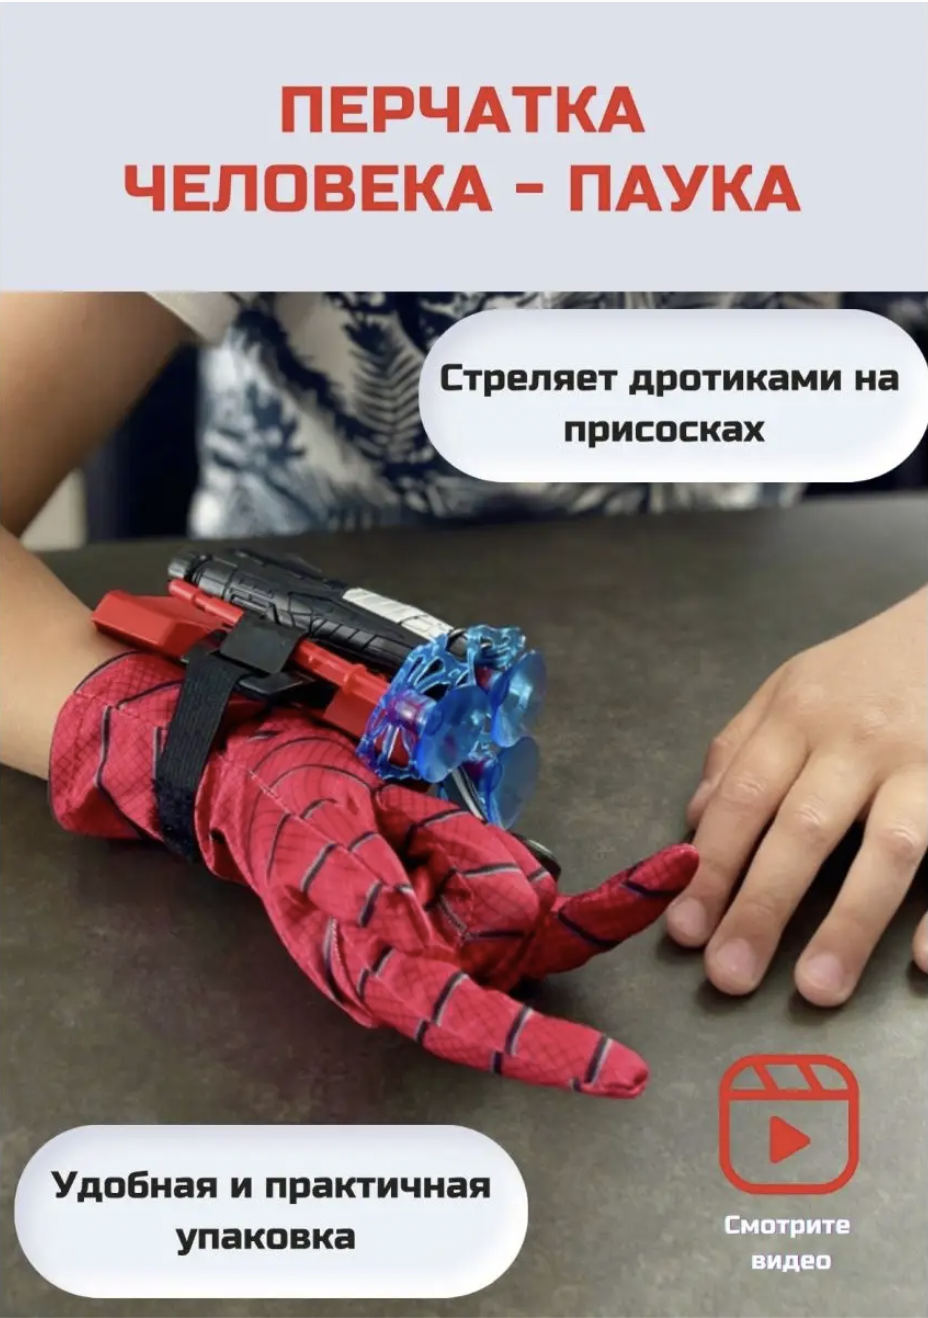 Бластер игрушечный RanCap Перчатка Человек паук, стреляет пулями на присосках детский пневматический бластер игрушечный двустволка обрез shotgun с лазерным прицелом